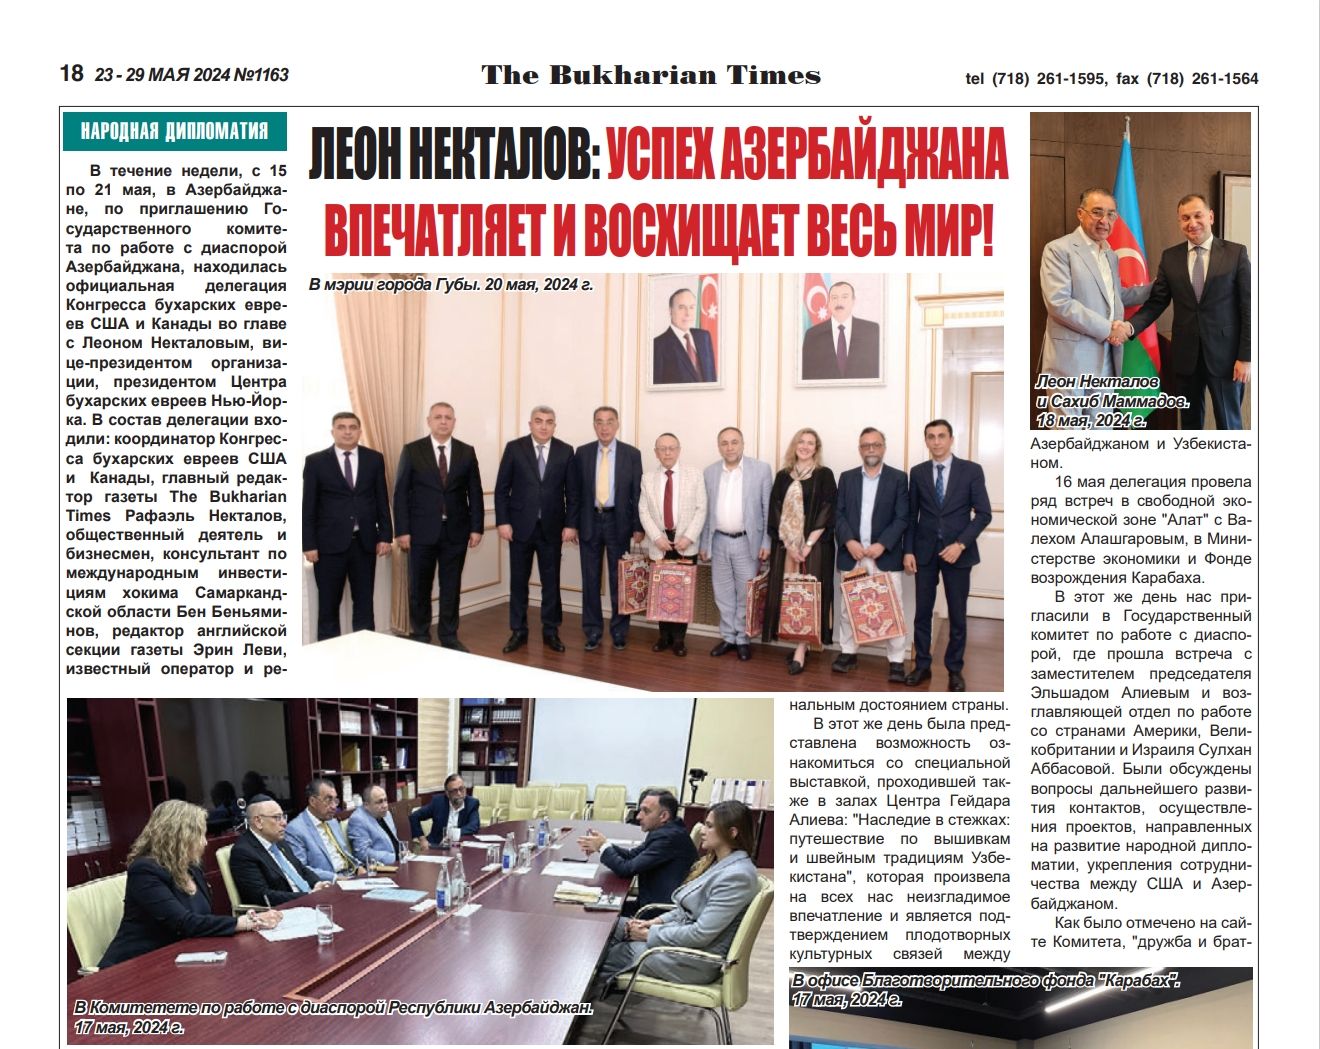 “Buxarian Tayms” (“The Bukharian Times”) qəzeti Buxara yəhudilərinin Azərbaycan səfərindən yazıb